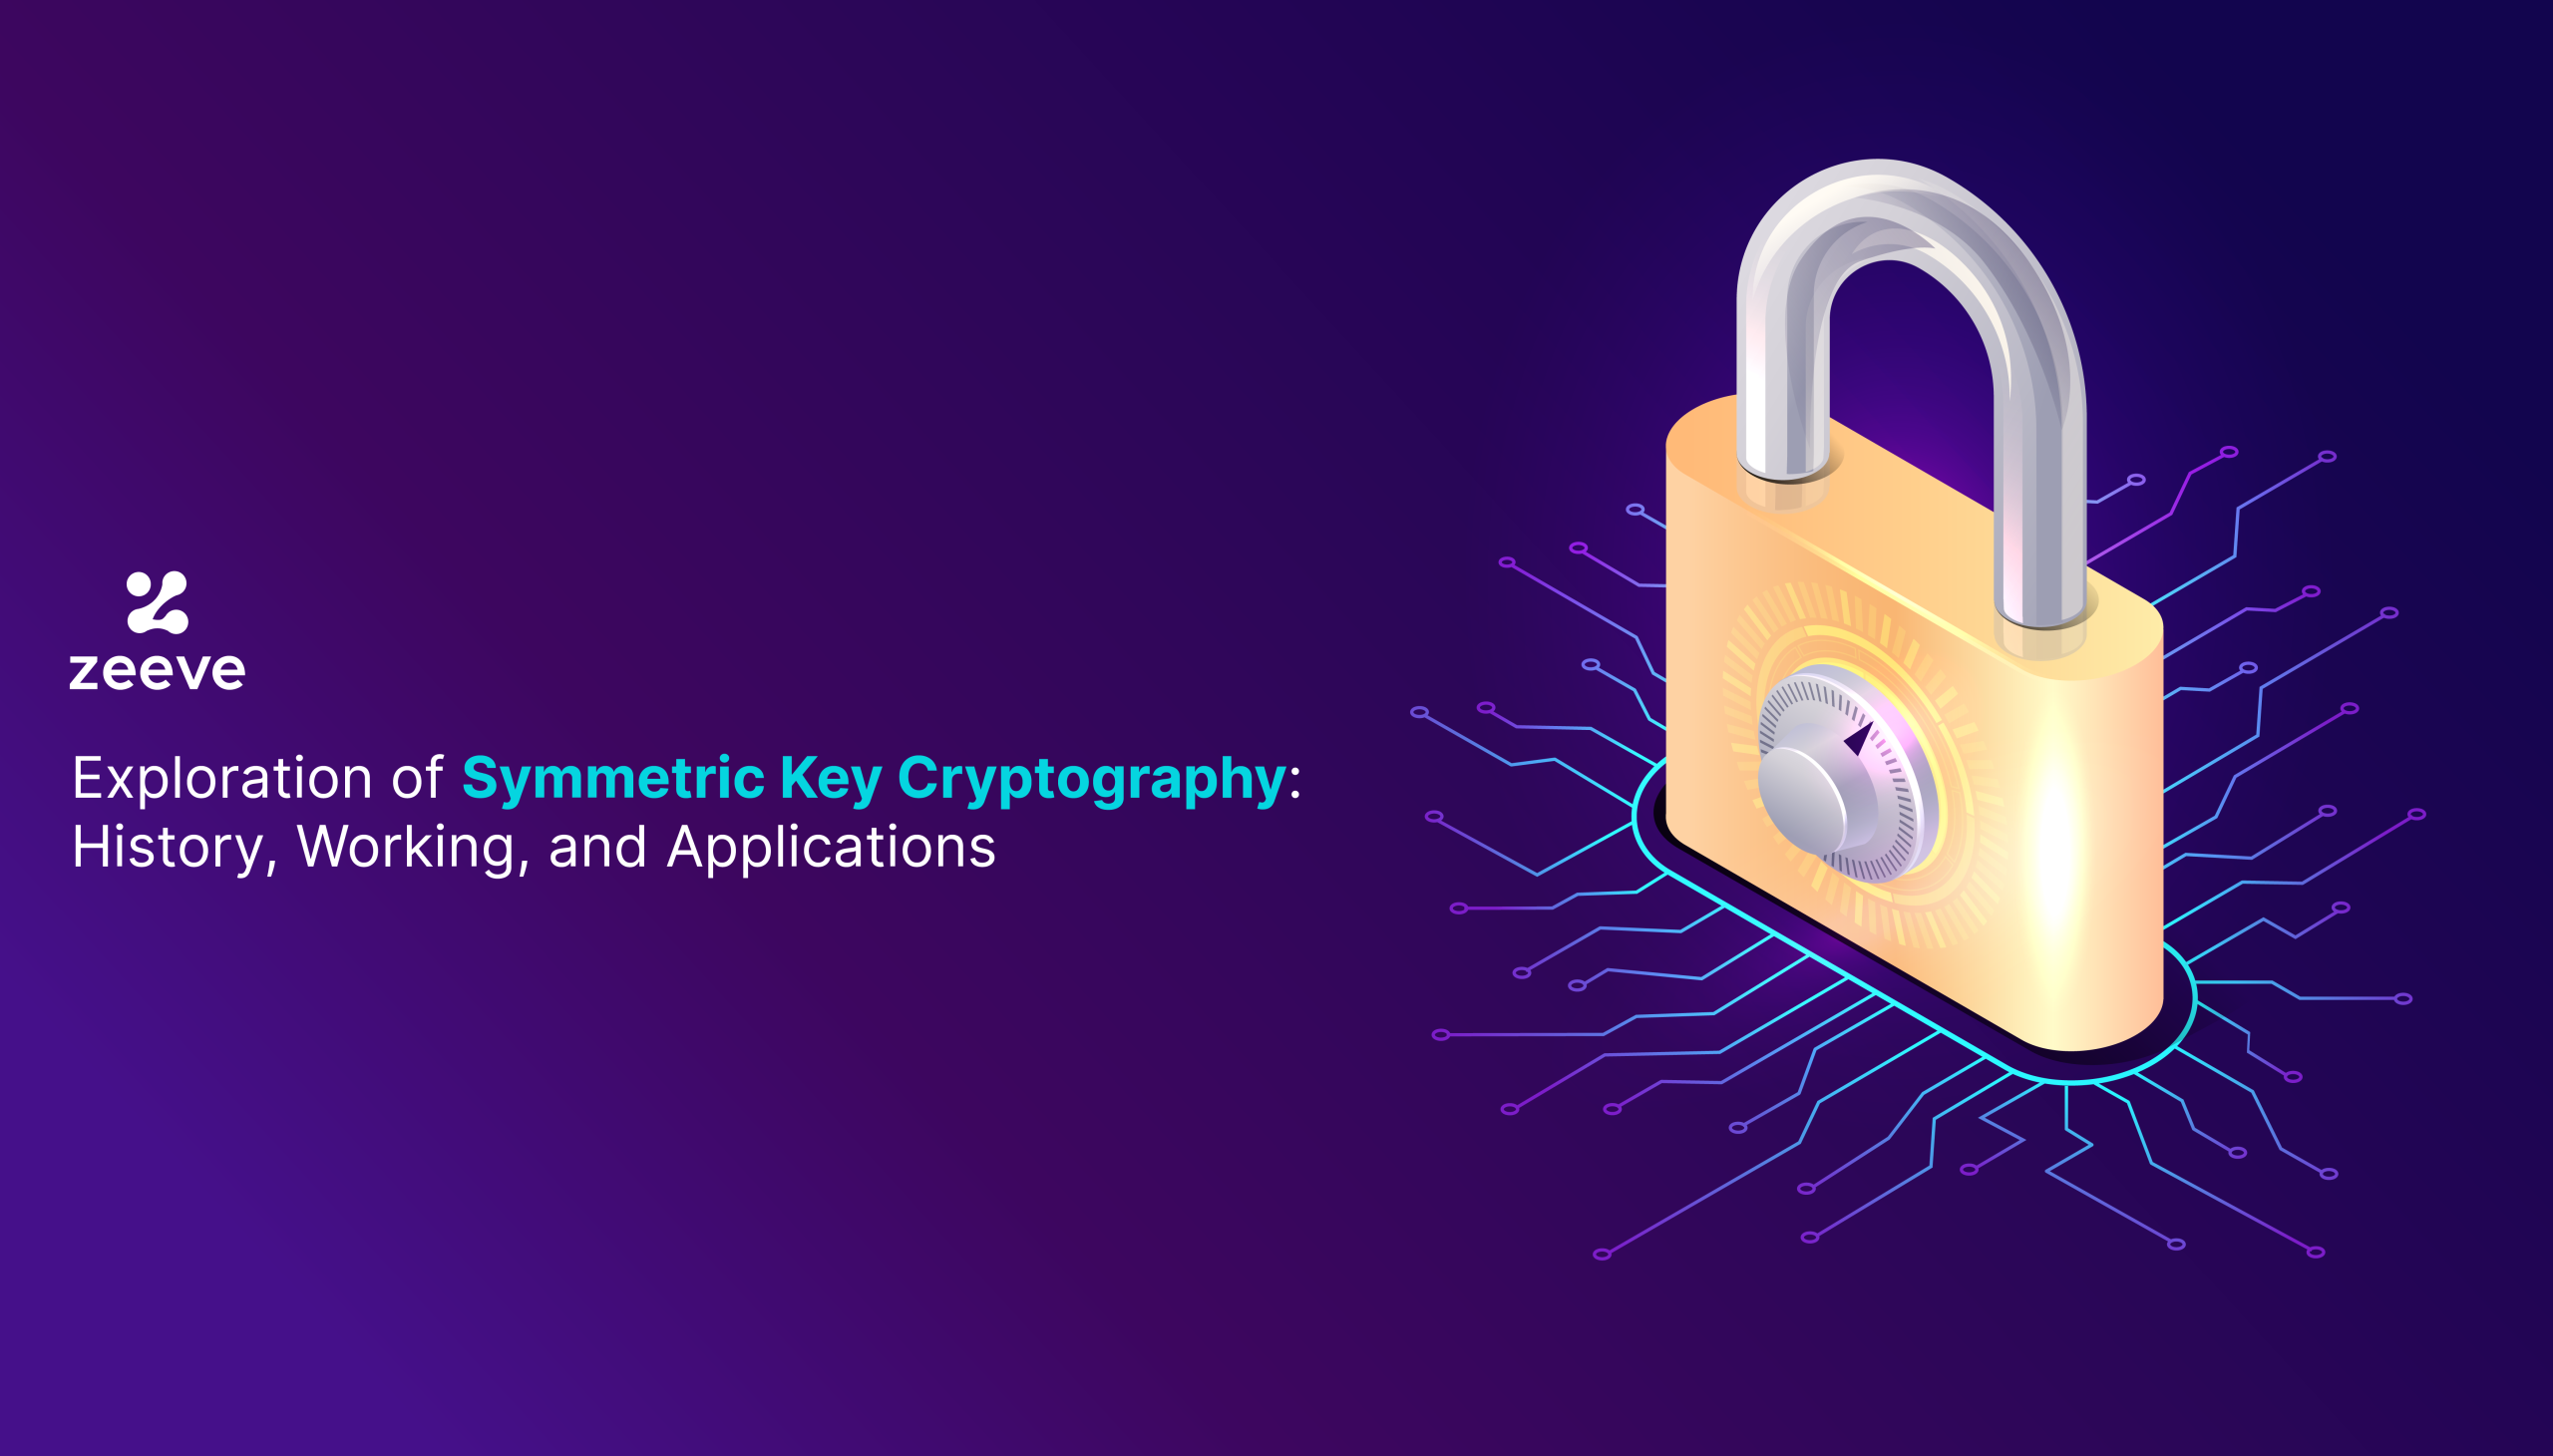 symmetric key cryptography